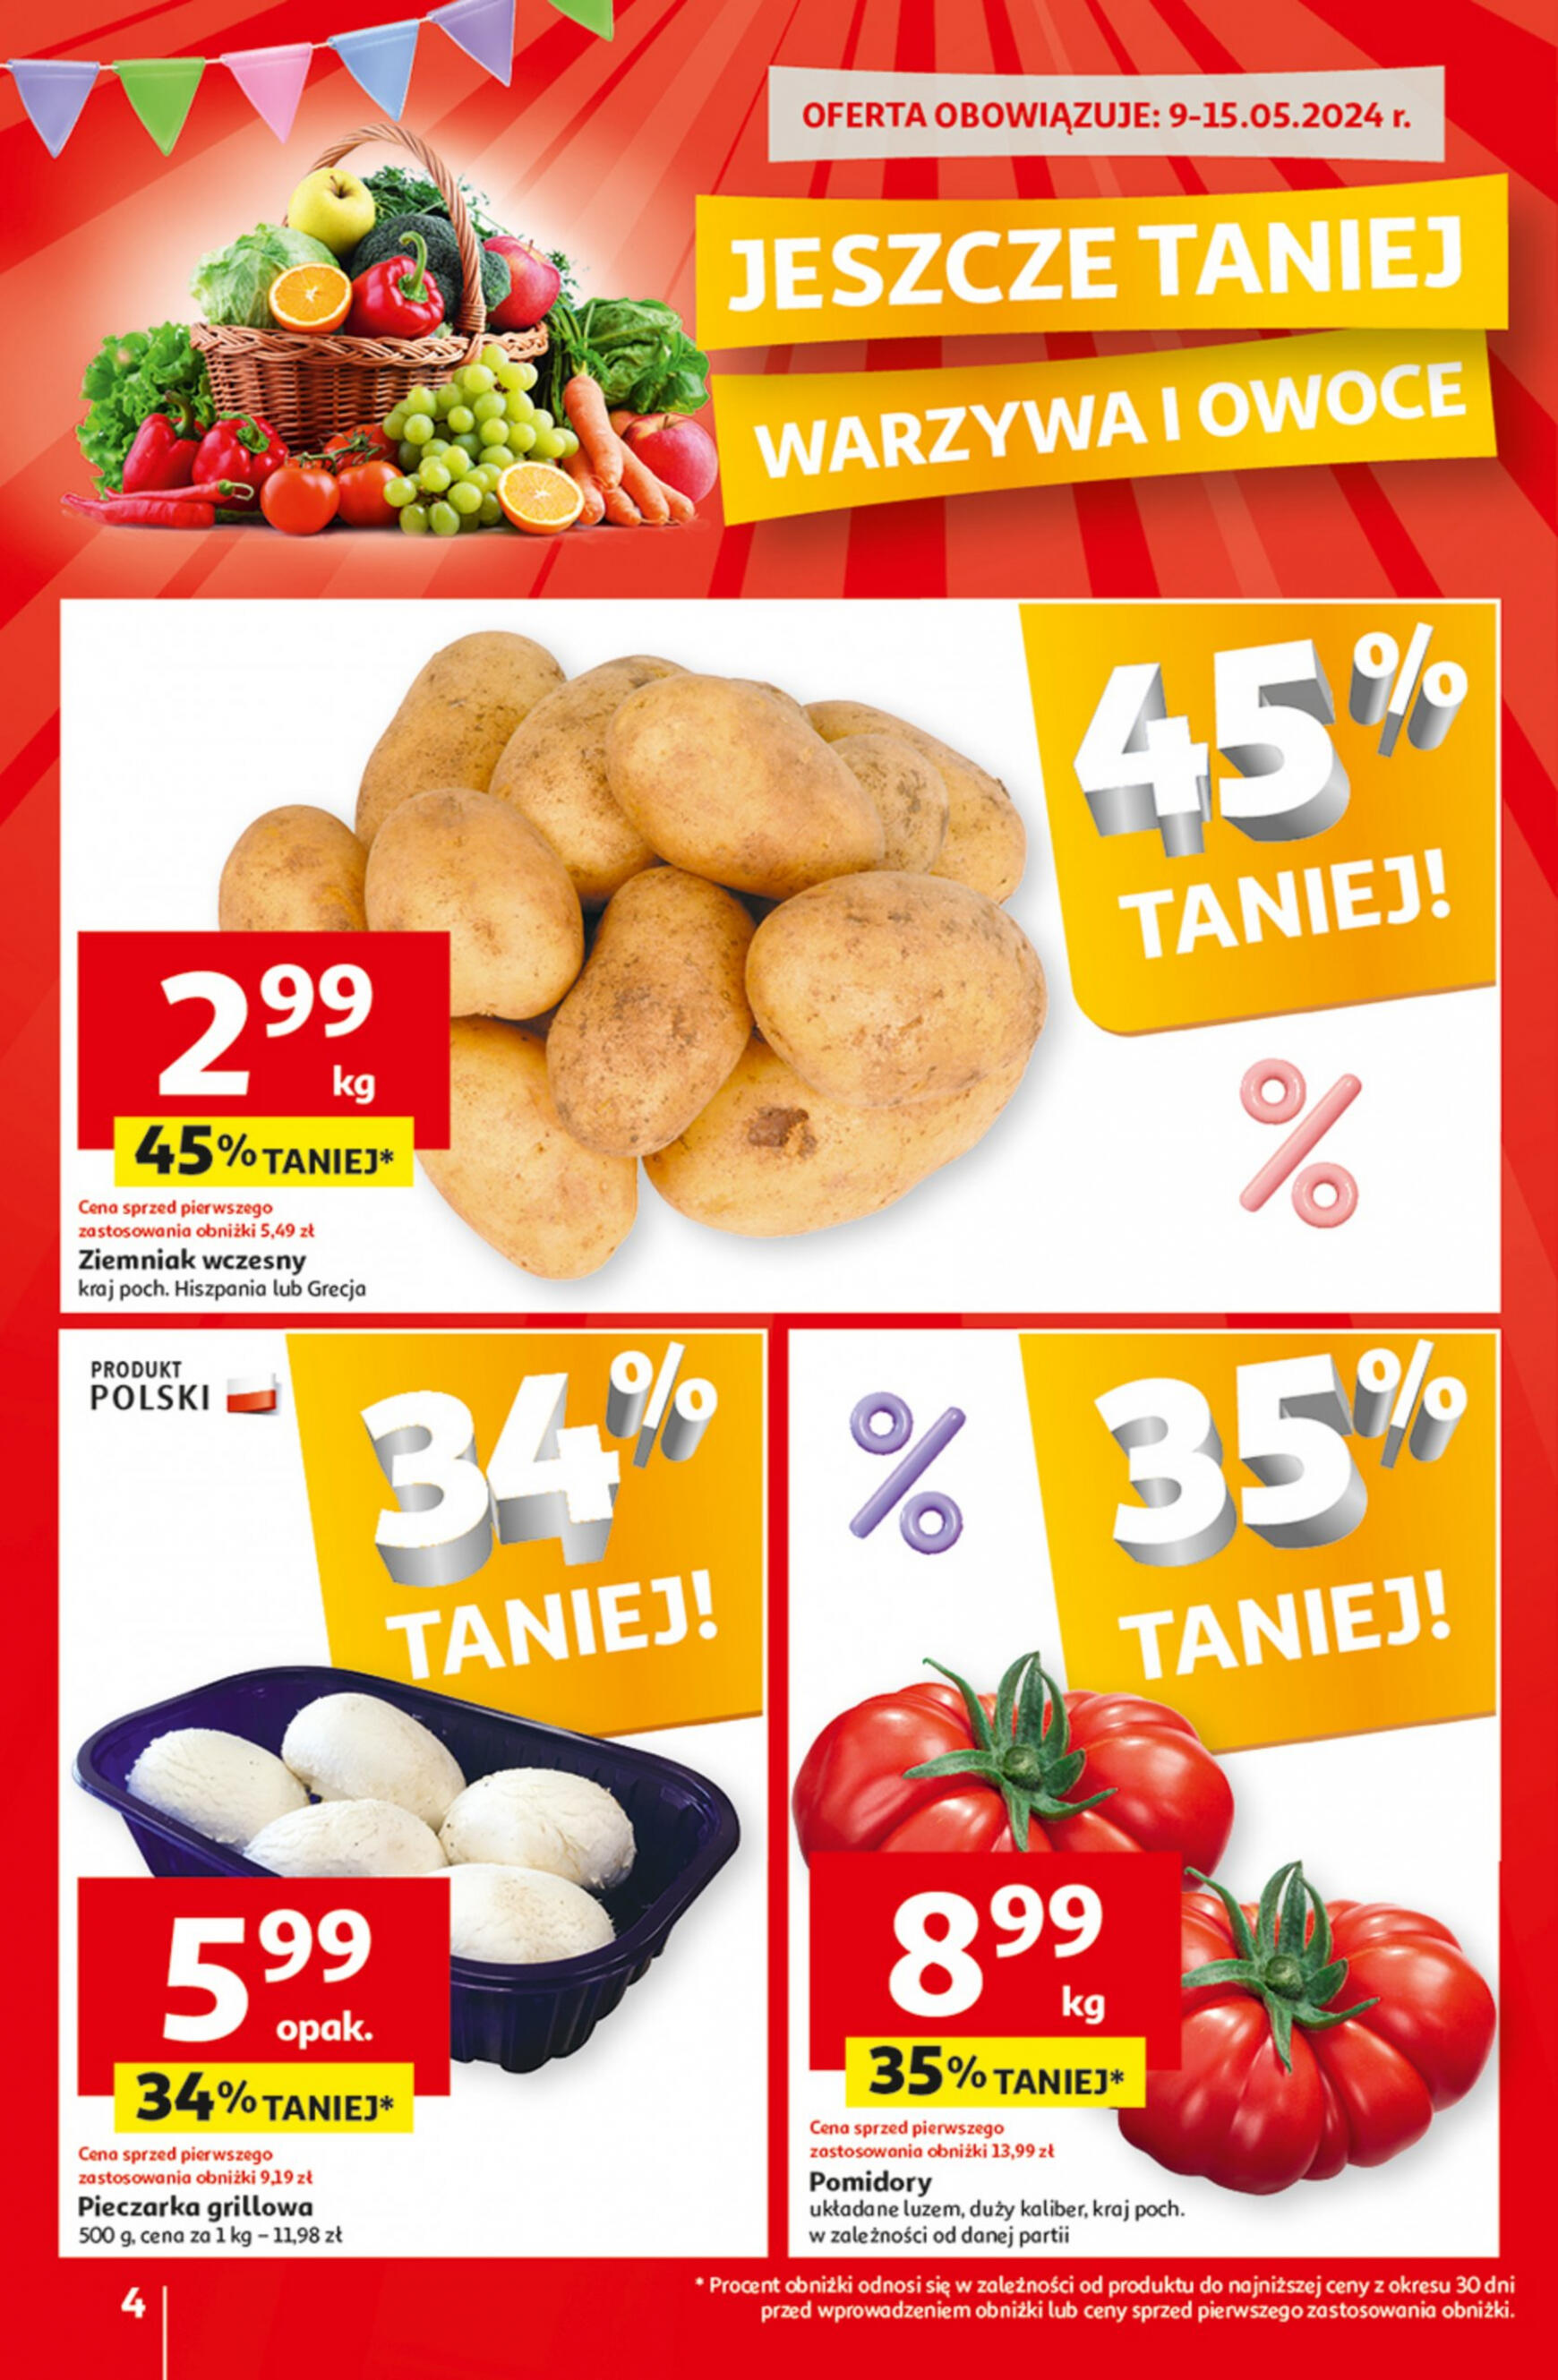 auchan - Moje Auchan - Gazetka Jeszcze taniej na urodziny gazetka aktualna ważna od 09.05. - 15.05. - page: 4